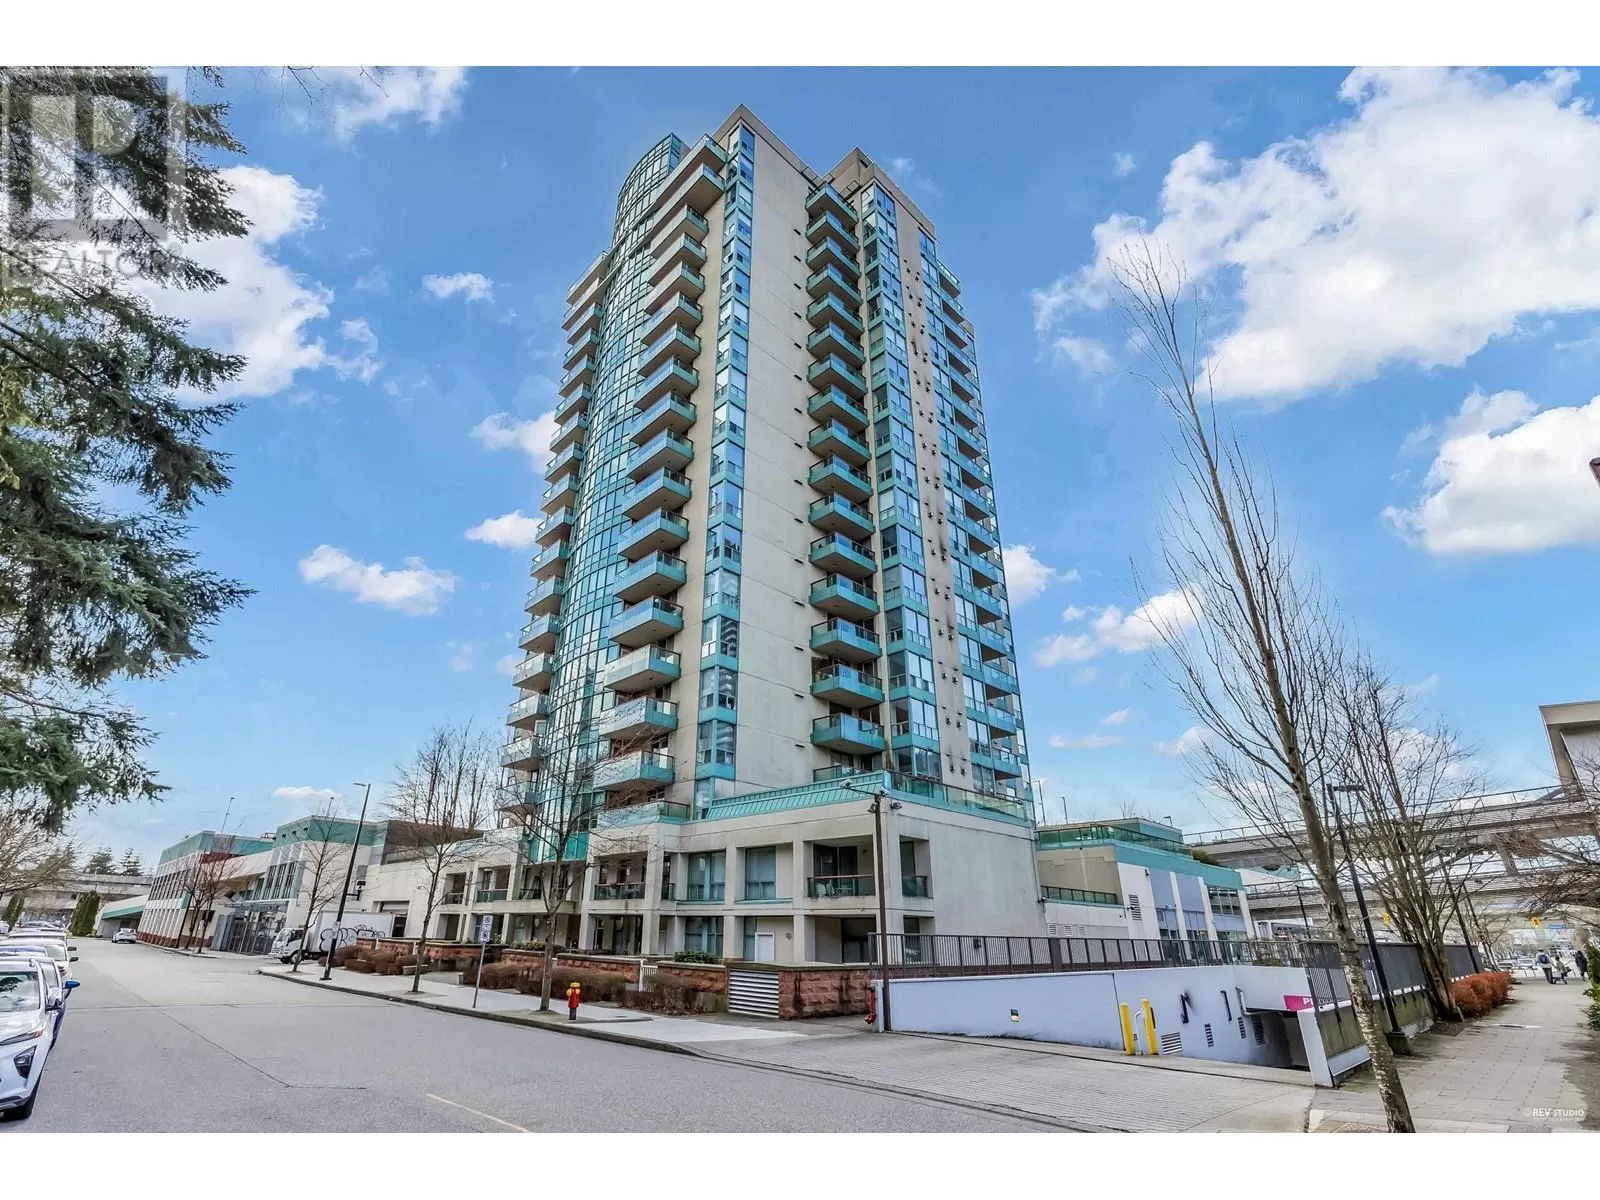 Apartment for rent: 2102 1148 Heffley Crescent, Coquitlam, British Columbia V3B 8A6